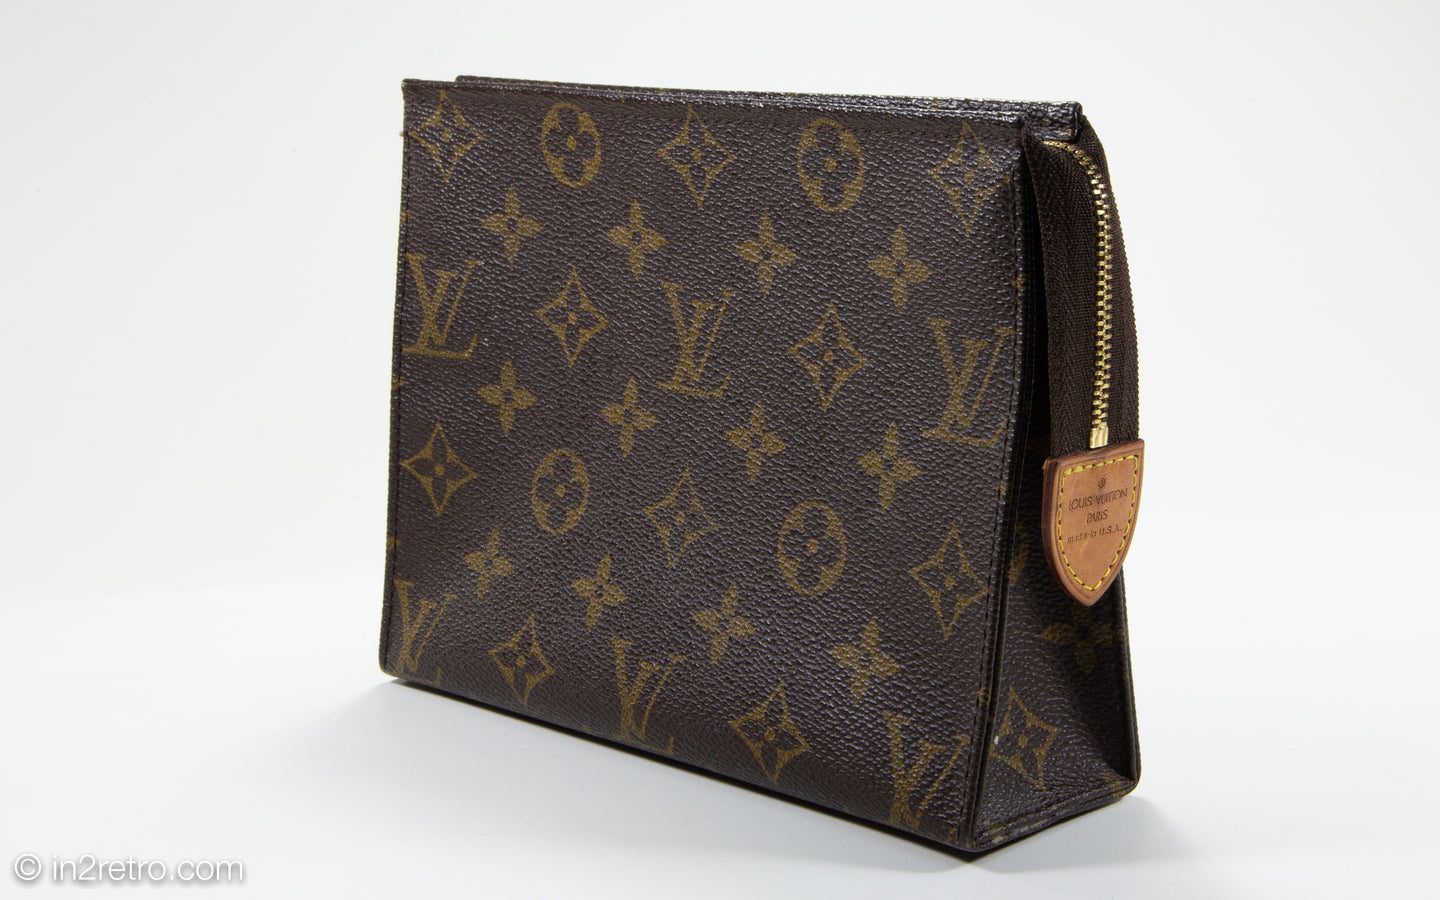 Pre-owned Louis Vuitton Box Pouch Bag Charm Monogram Eclipse